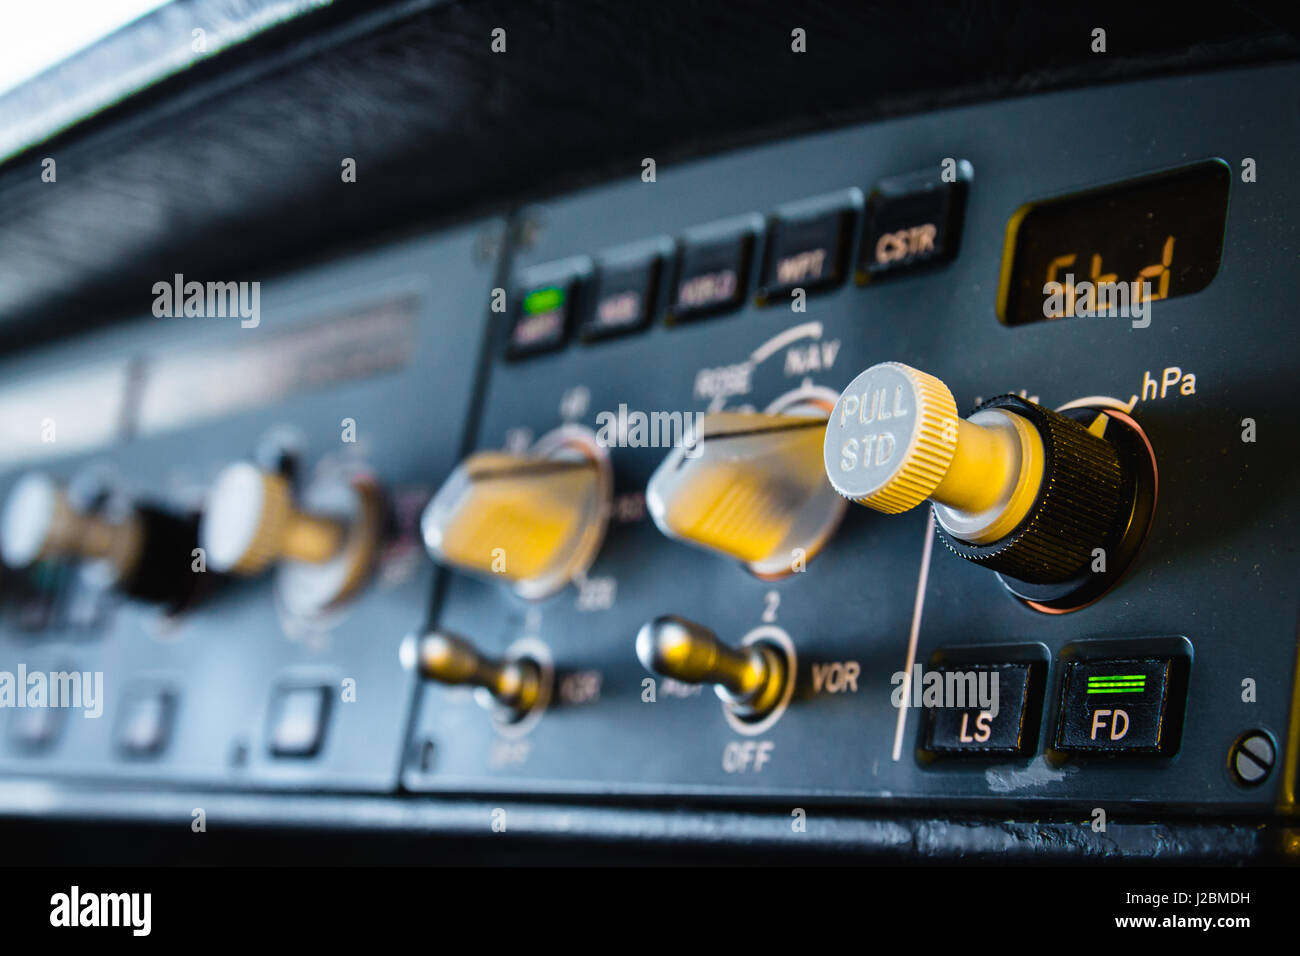 Airbus A320, panel de instrumentos y controles de piloto automático. Unidad de control de vuelo (FCU) con controles, diales y botones. Foto de stock